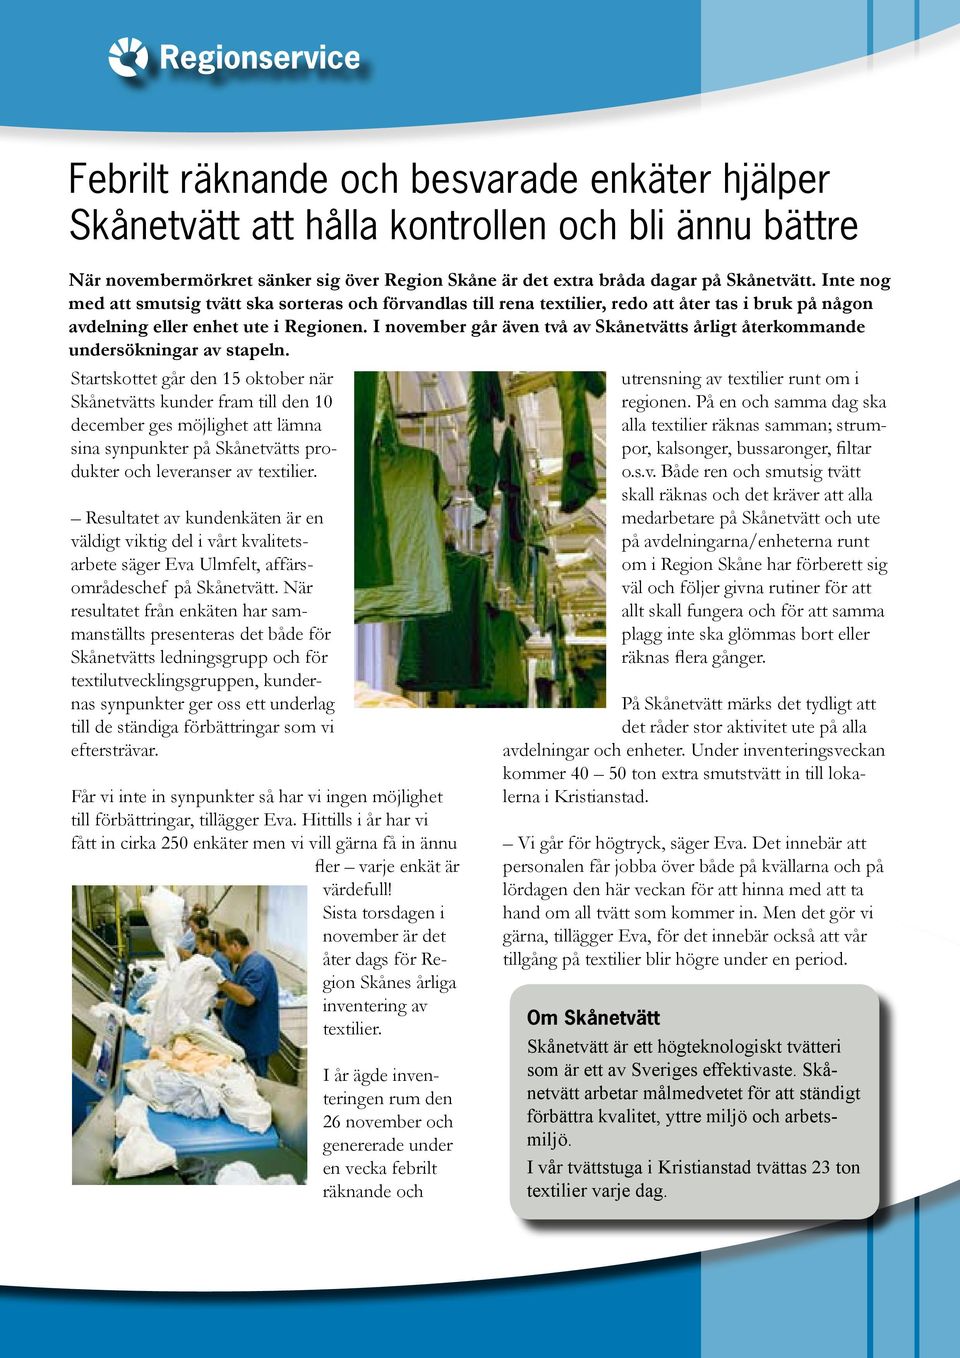 I november går även två av Skånetvätts årligt återkommande undersökningar av stapeln.